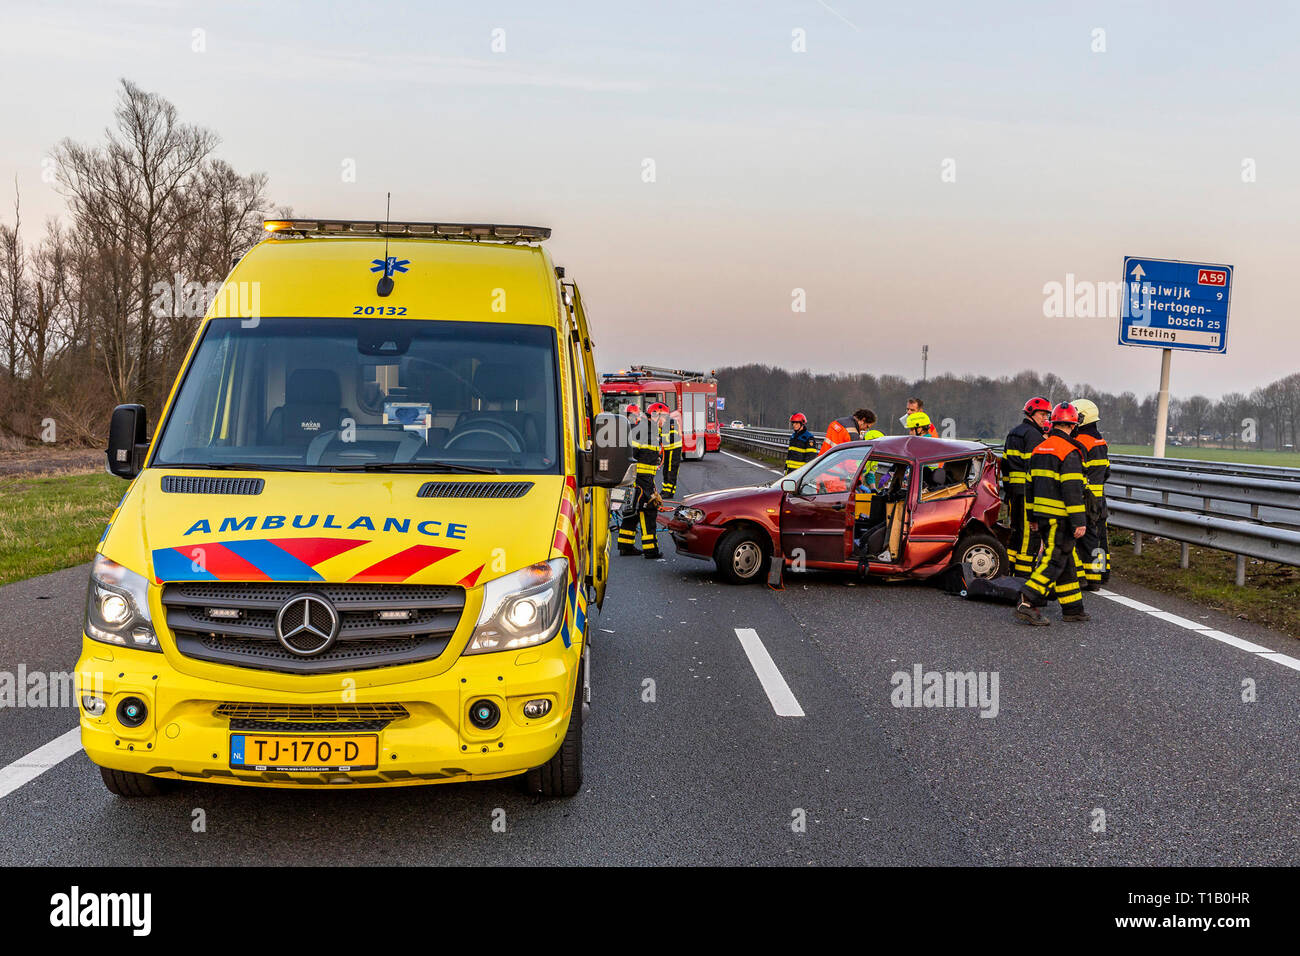 WASPIK, Paesi Bassi, 22-03-2019, binnenlands nieuws, A59, , De un59 tussen Waalwijk en knooppunt Hooipolder zijn vrijdagavond twee ongelukken gebeurd. Daarbij zijn in totaal vier gewonden gevallen. Een auto en een busje botsten tegen elkaar waarbij drie personen in de auto gewond raakten. In de tegenovergestelde richting gebeurde een ongeval in de kijkersfile waarbij nog een gewonde viel, volgens de politie. Foto Stock